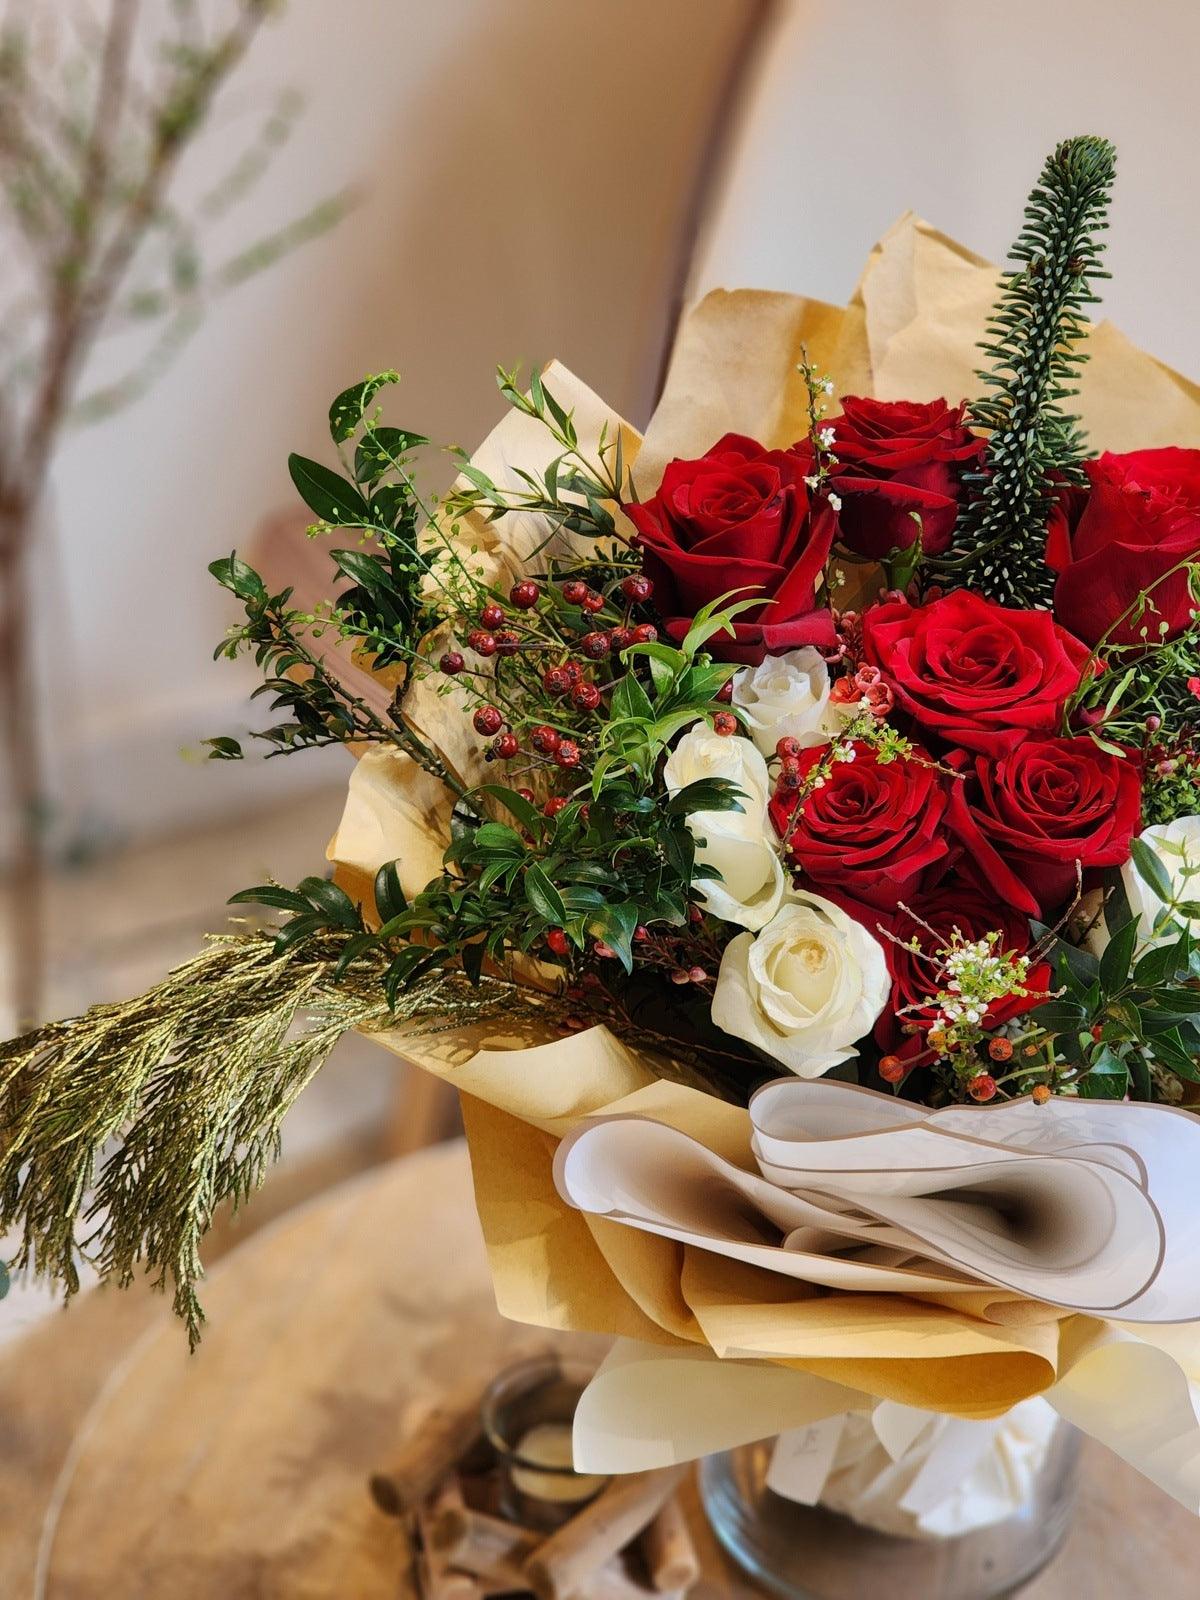 紅玫瑰 紅玫瑰花束 Lavish Florist 即日送貨 香港花店 網上花店